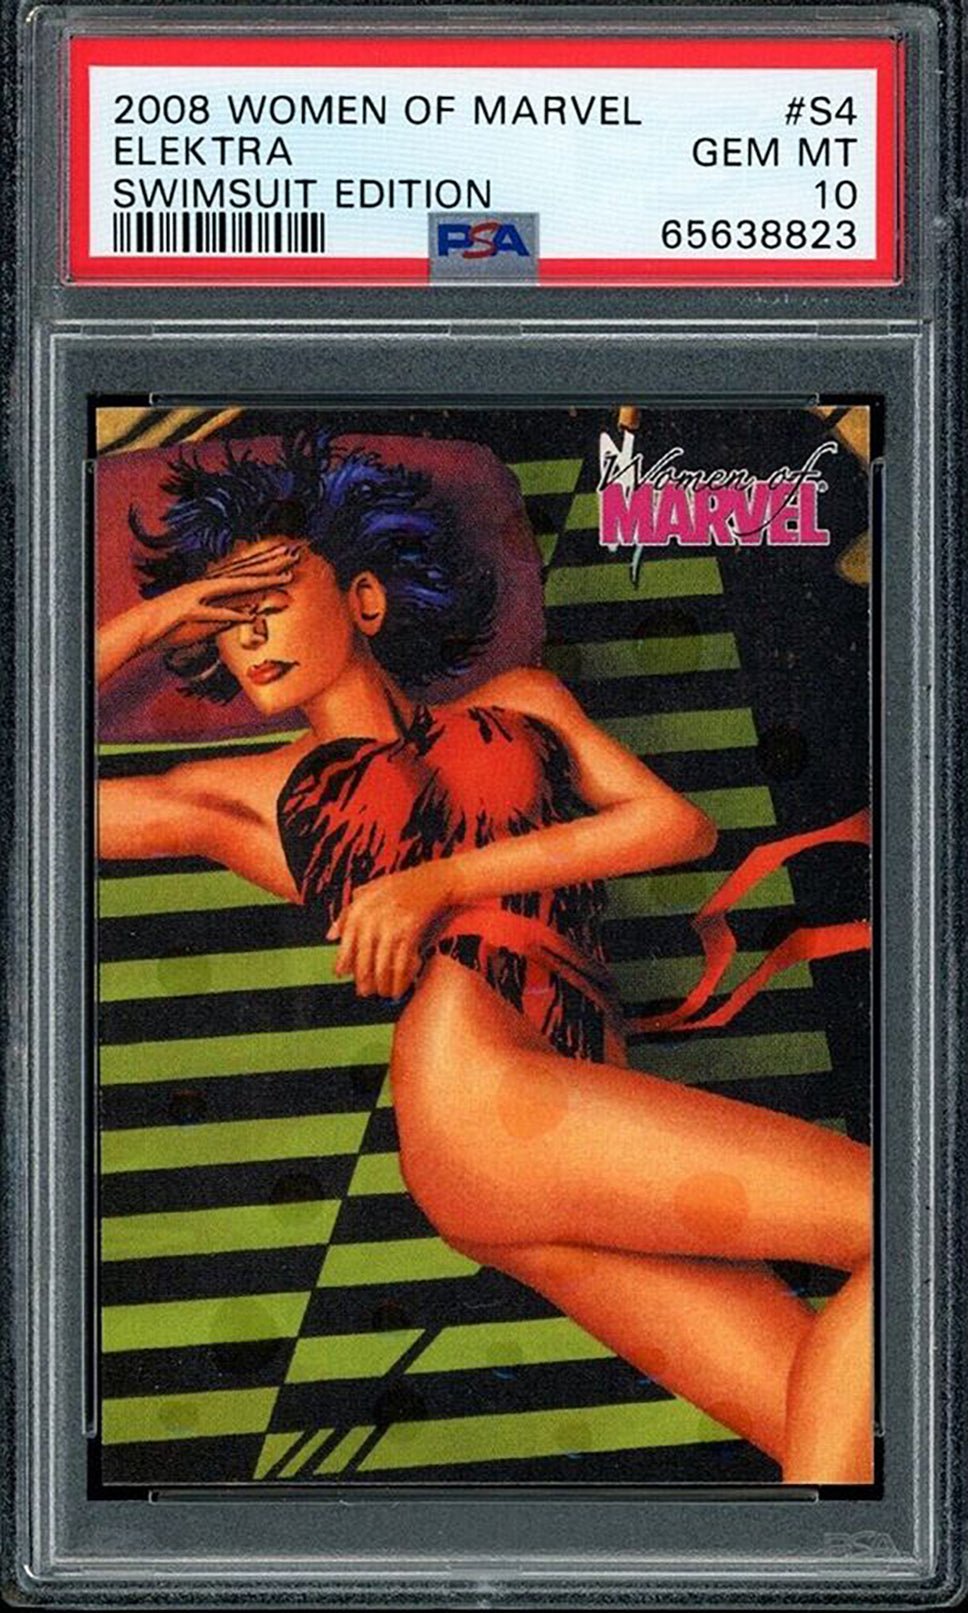 ELEKTRA PSA 10 2008 Rittenhouse Women of Marvel Swimsuit Edition #S4 Marvel Graded Cards Insert - Hobby Gems